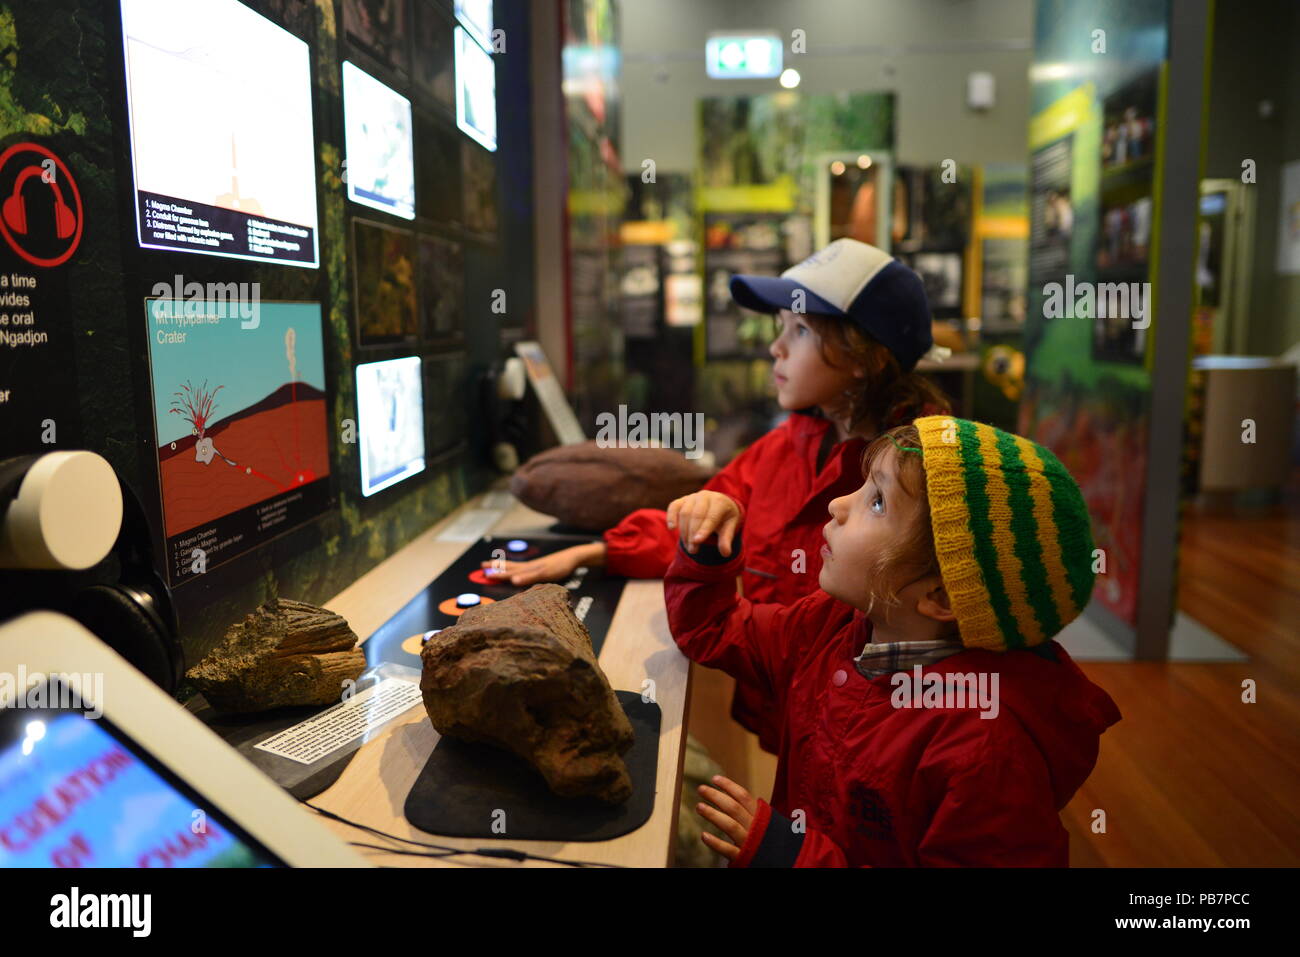 Kinder suchen in Awe am interaktiven Displays an der Malanda fällt Visitor Centre, kostbare Momente, ehrliche, Atherton Tablelands, QLD, Australien Stockfoto